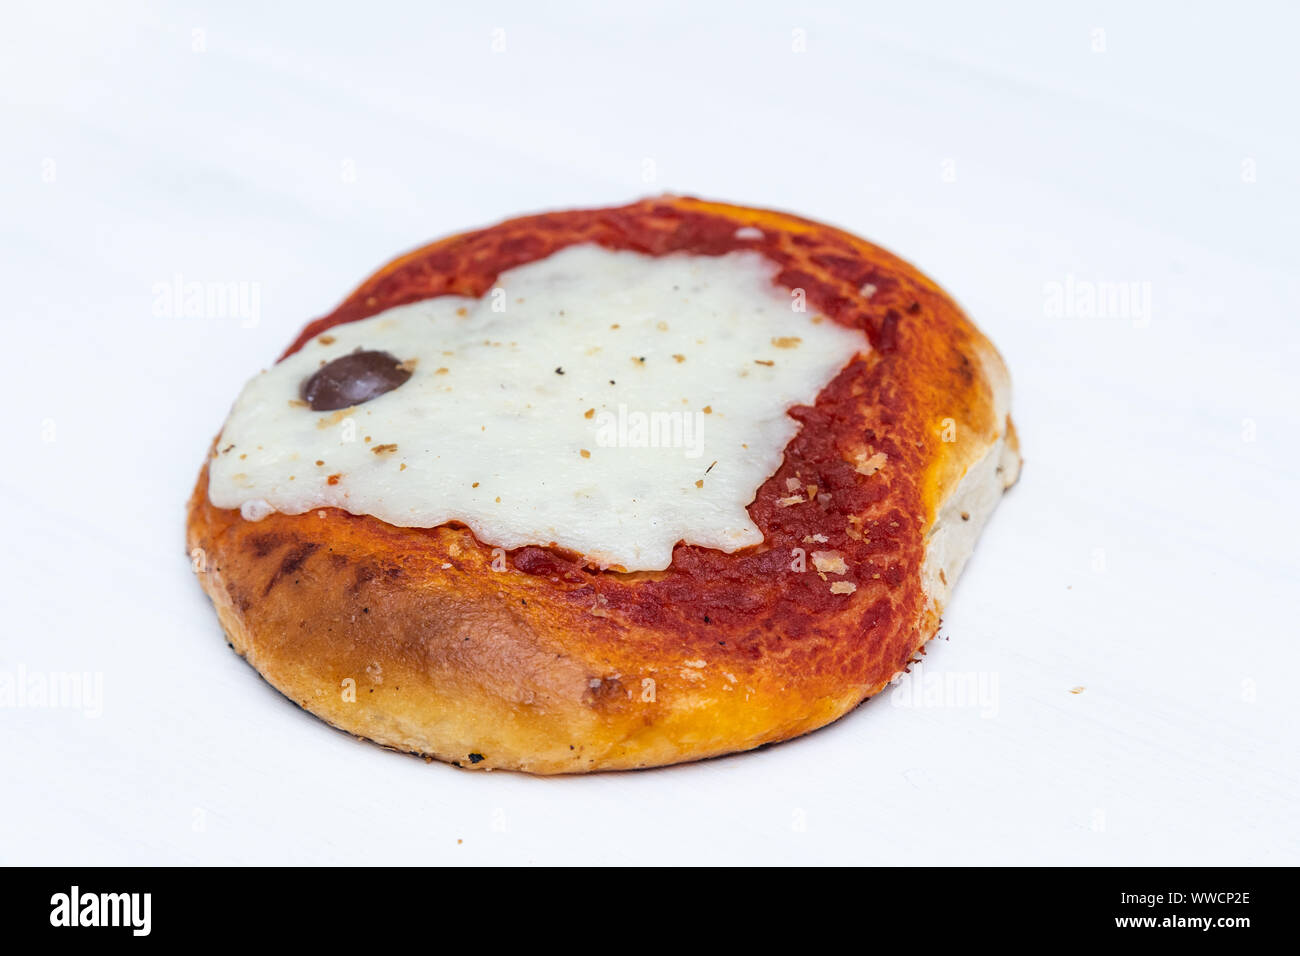 Pizzetta sicilien. Une rue typique de la nourriture de la Sicile. Faite avec l'olive, la tomate et le fromage. Banque D'Images